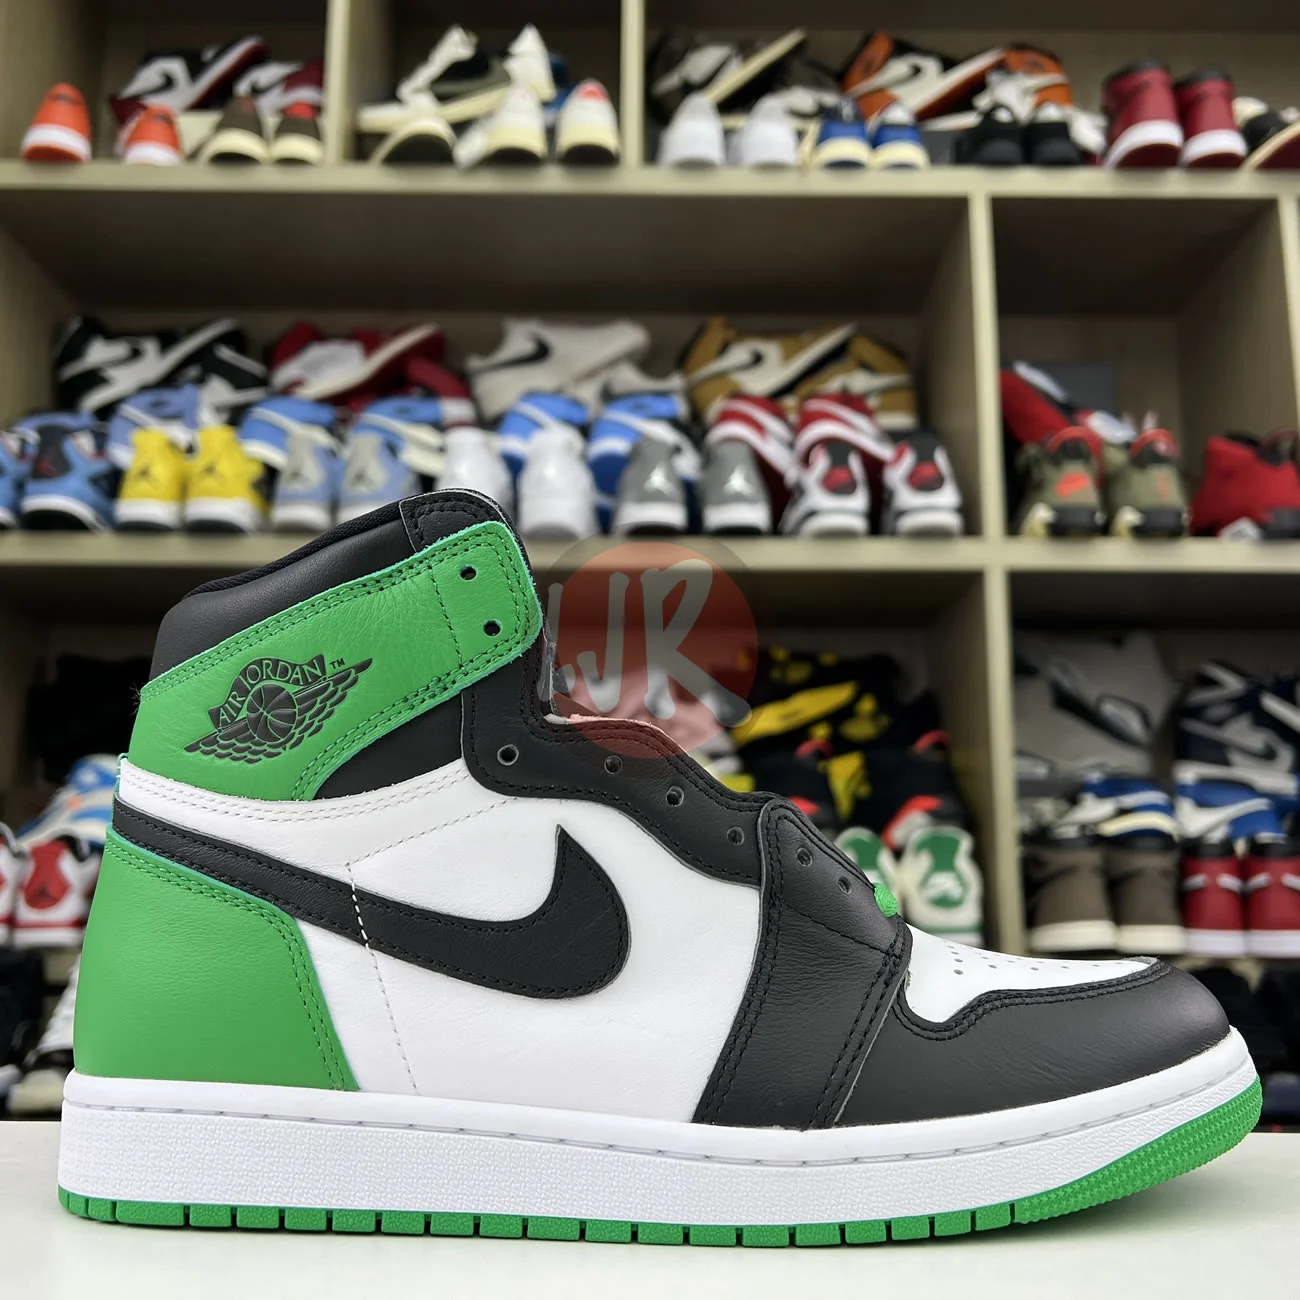 Air Jordan 1 Retro High Og Lucky Green Dz5485 031 Ljr Sneakers (12) - www.ljrofficial.com